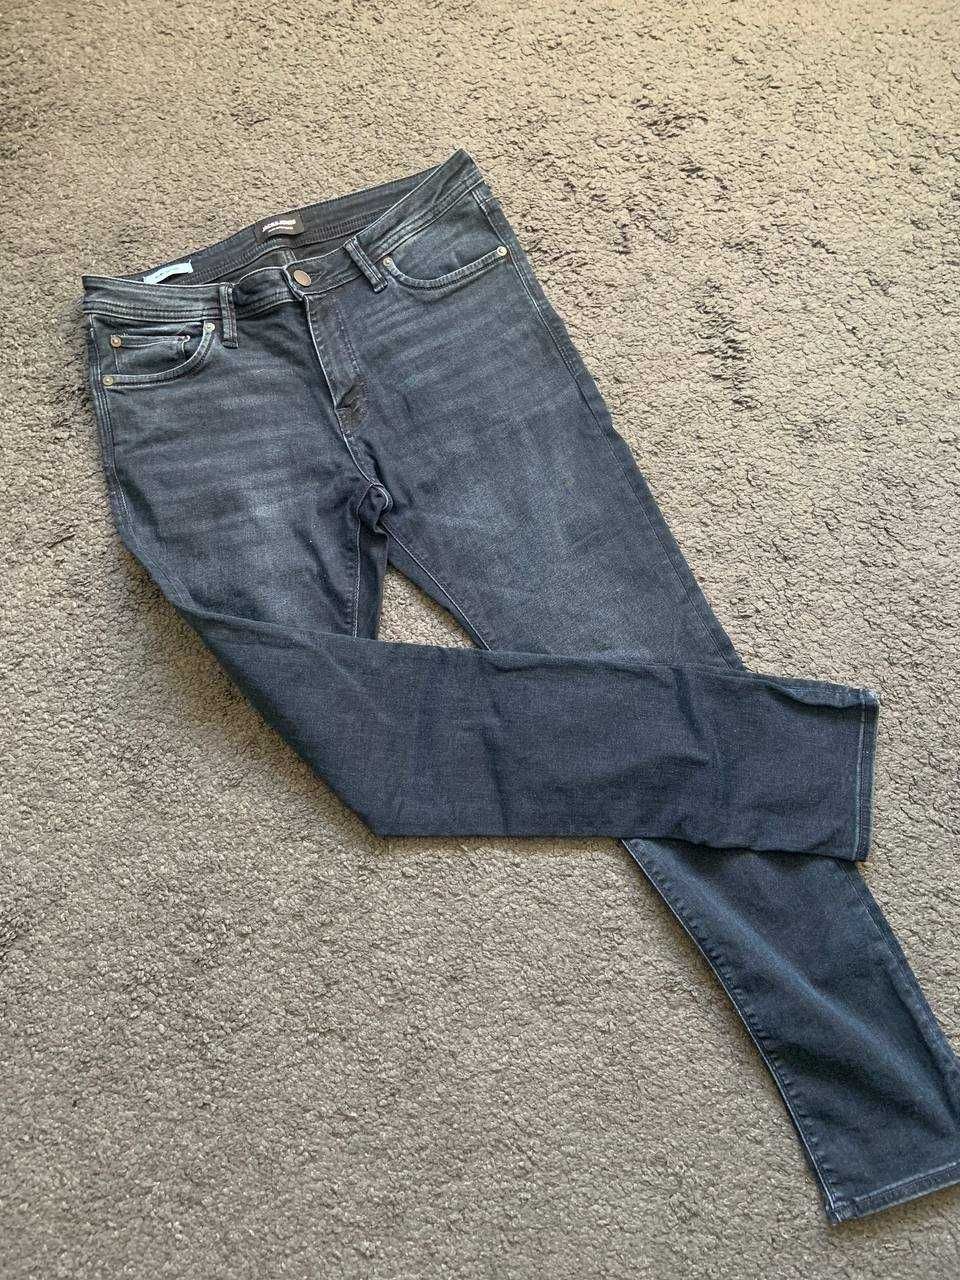 Мужские джинсы Jack&Jones 31х32